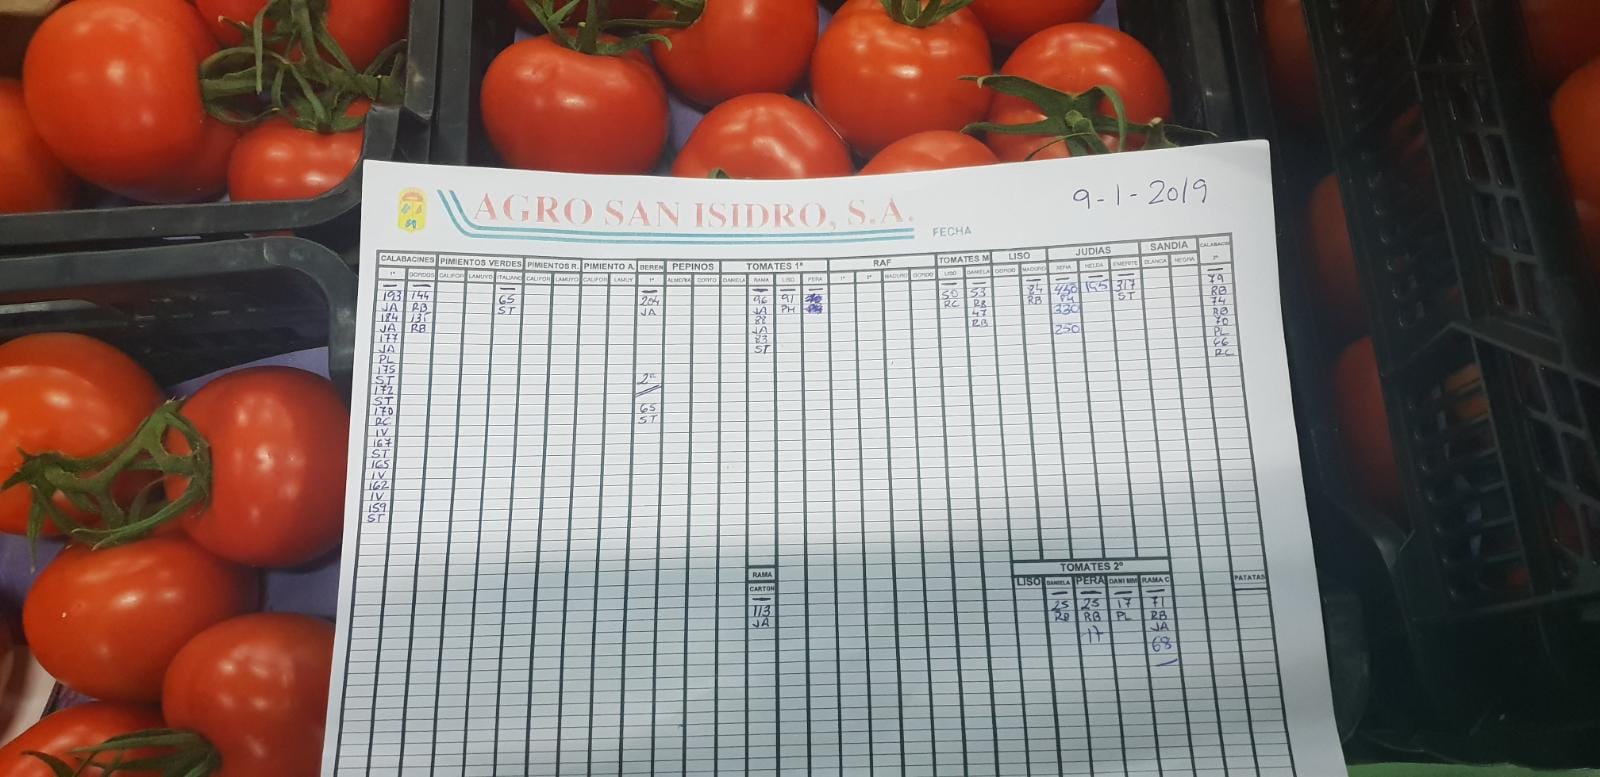 Subasta hortofrutícola Agro San Isidro 9 de Enero 2019